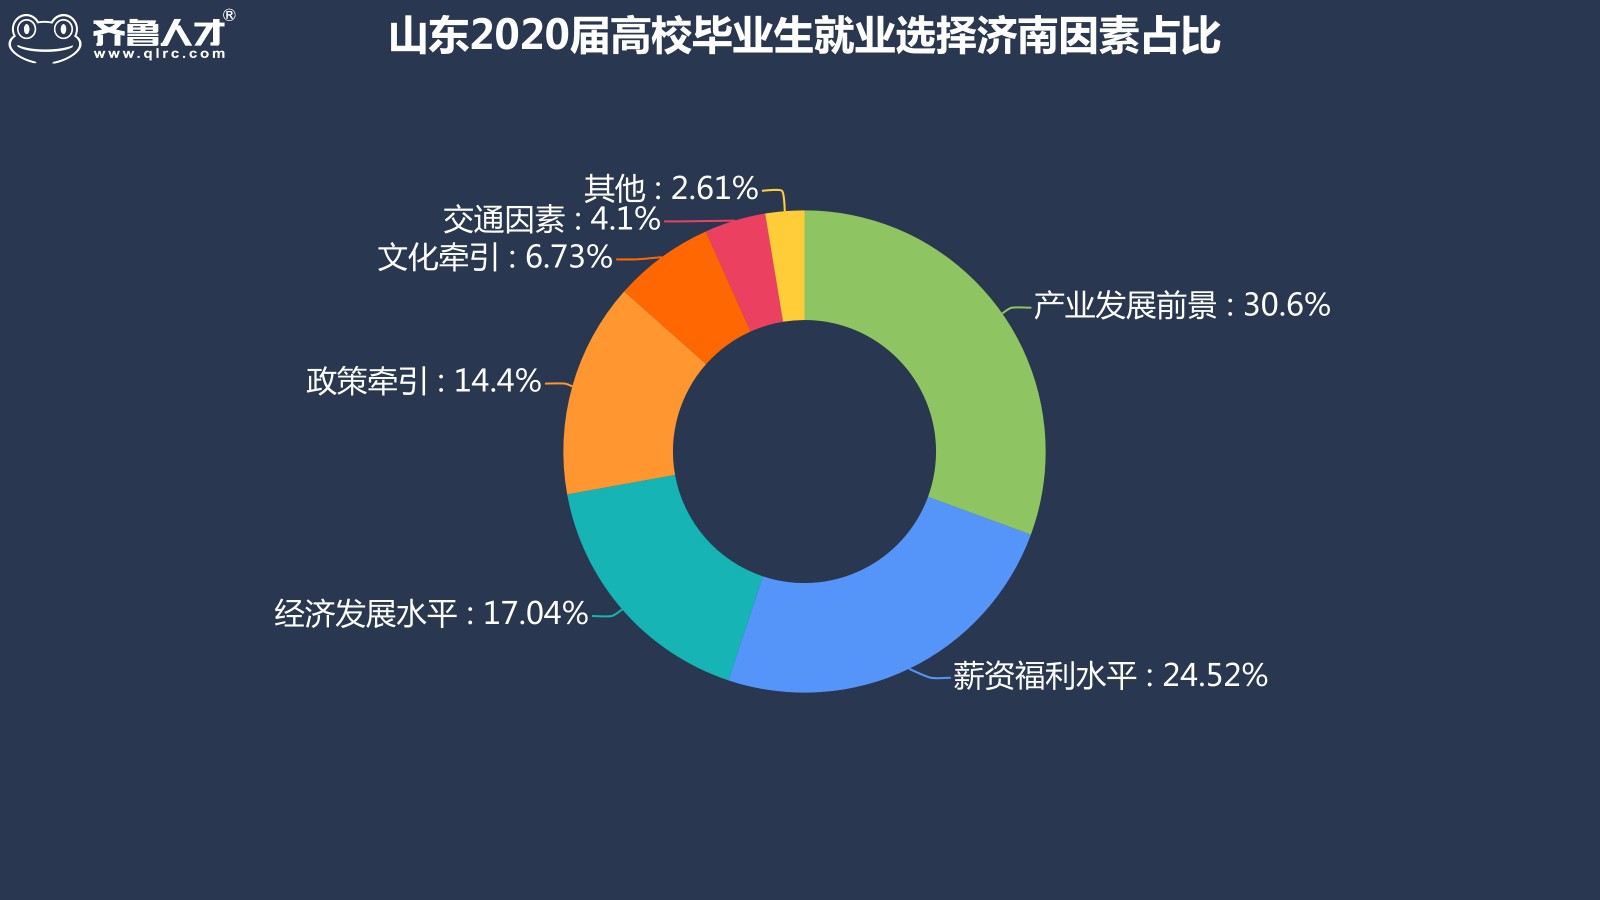 齐鲁人才网济南成为山东2020届高校毕业生就业地首选，平均薪酬达5986元图2.jpg